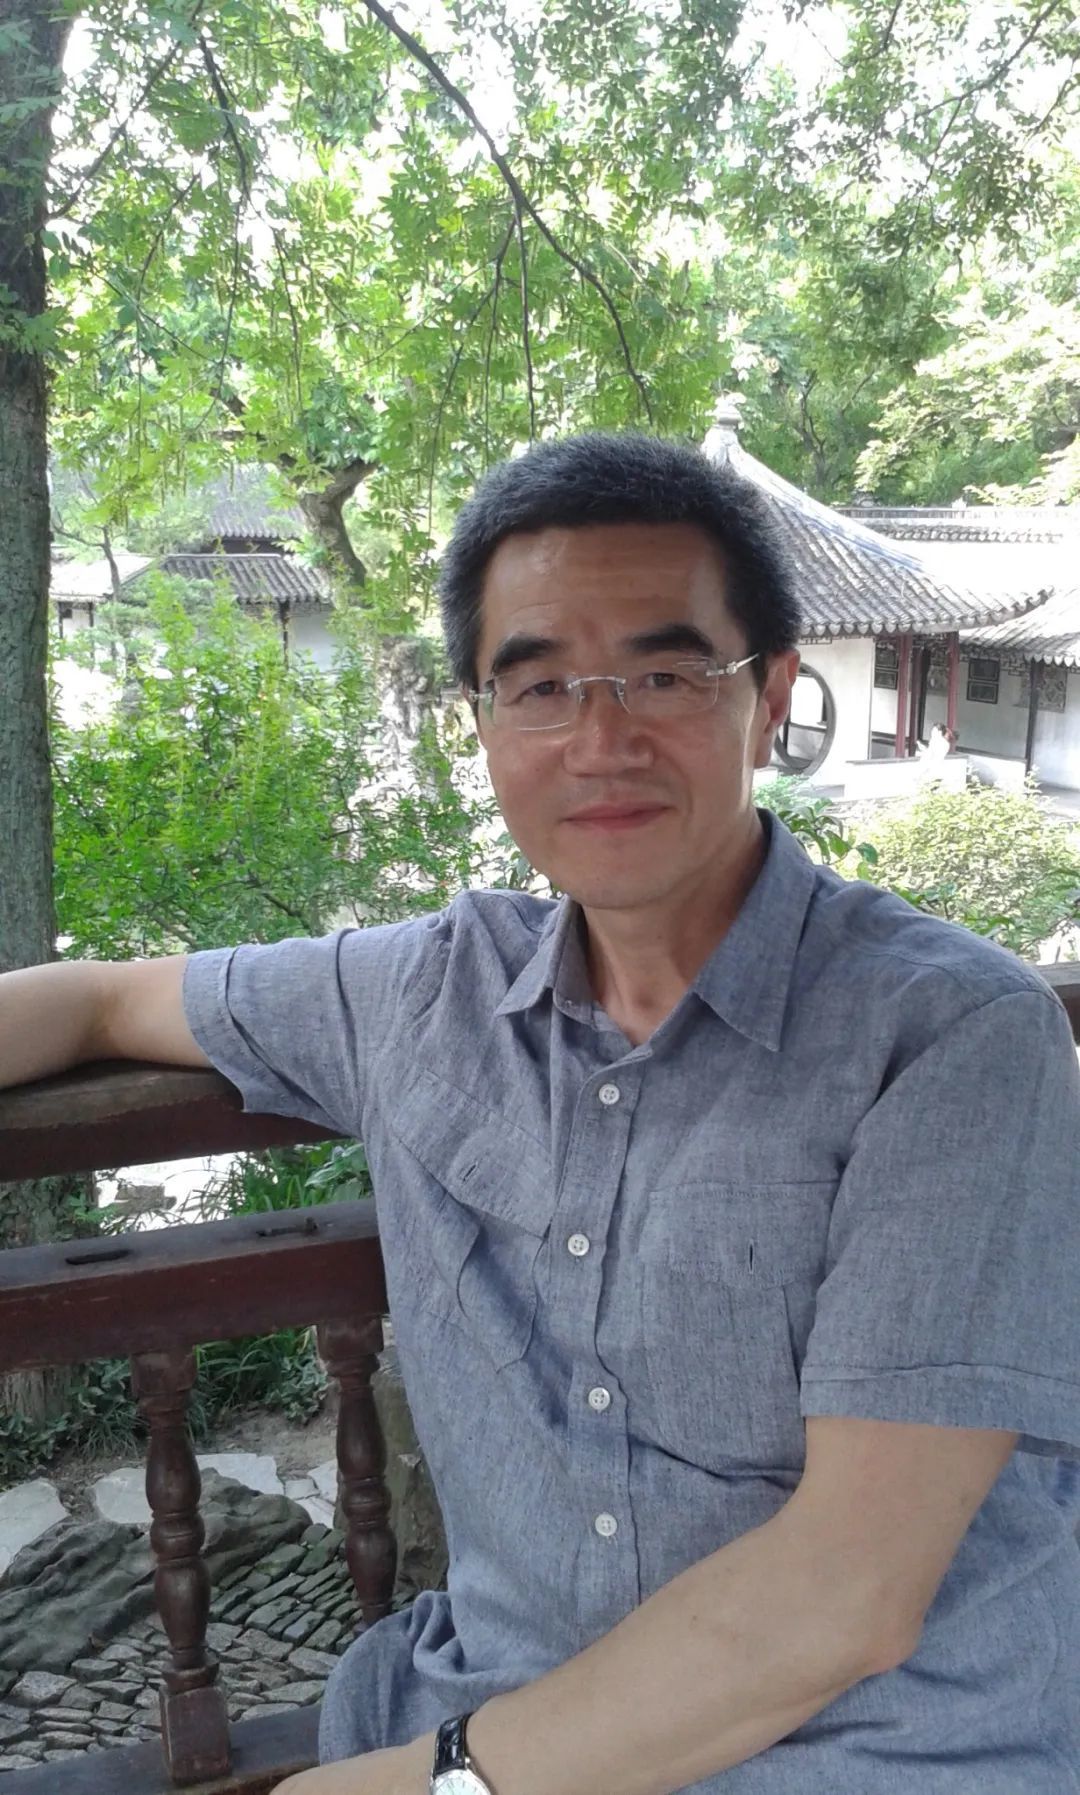 阎云翔，生于1954年，美国加州大学洛杉矶分校文化人类学终身教授。哈佛大学人类学博士。著有《礼物的流动》《私人生活的变革》《中国社会的个体化》等著作。其中《私人生活的变革》获2005年度“列文森中国研究书籍奖”。